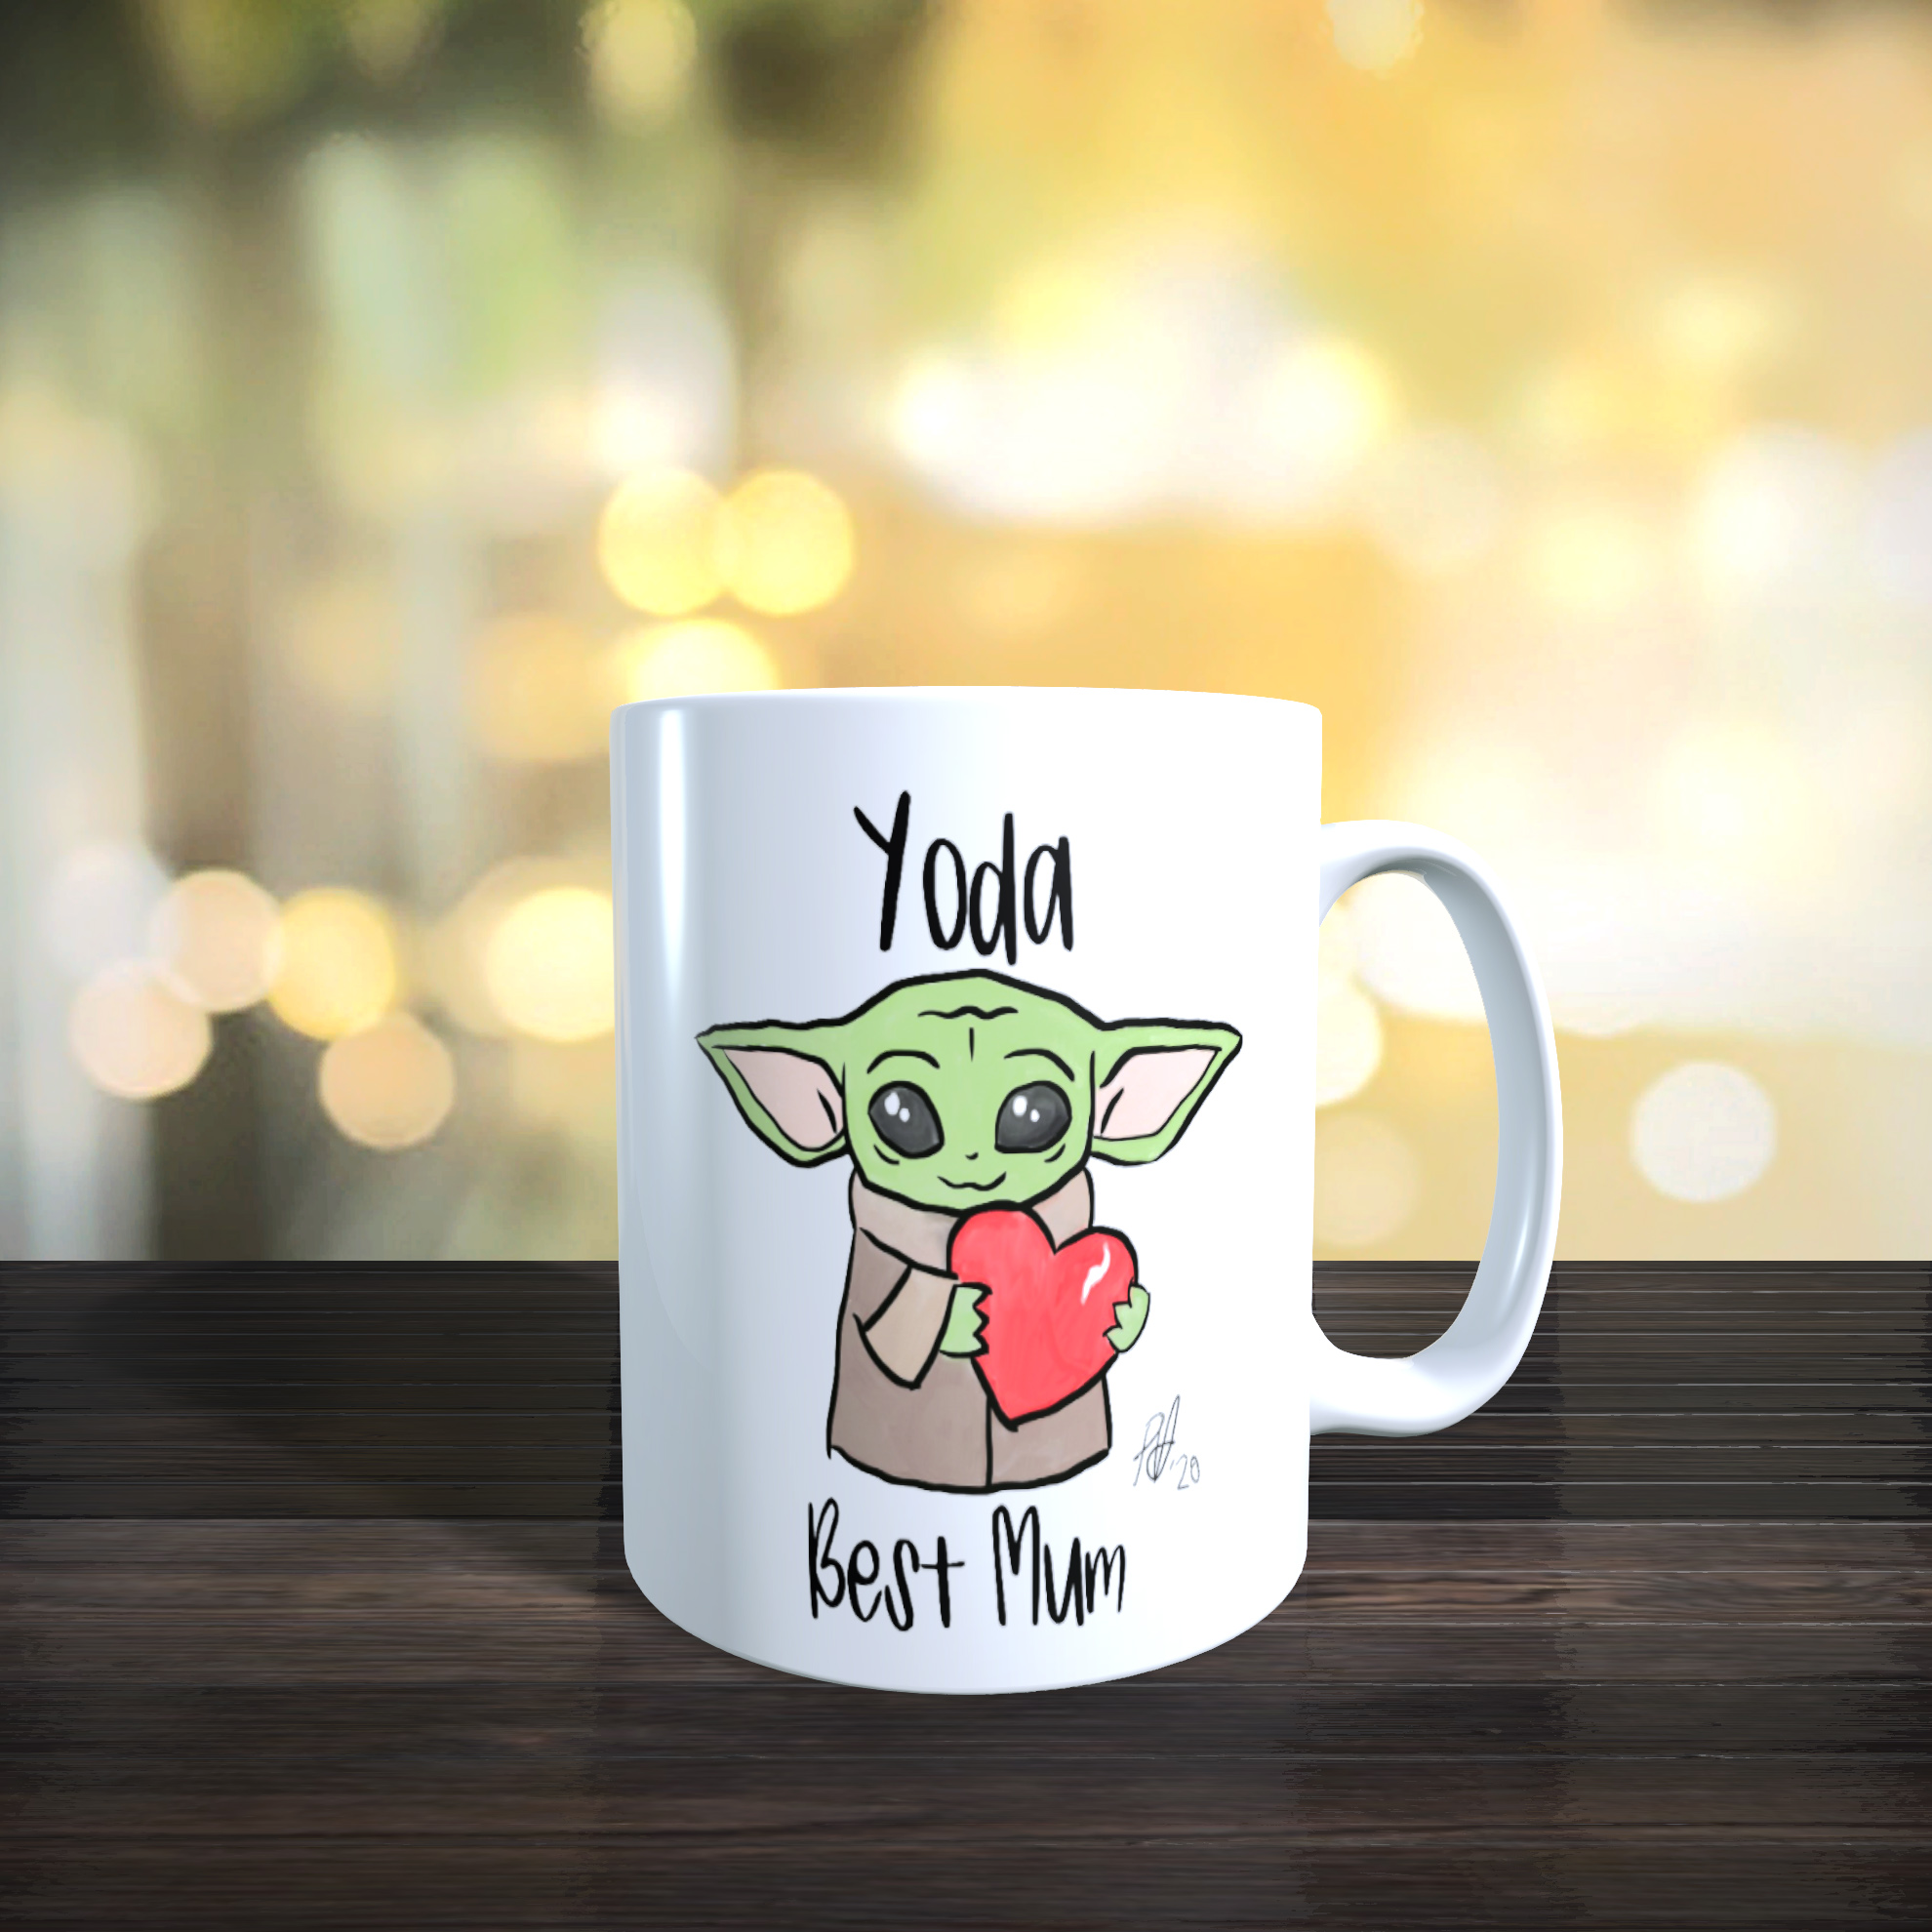 11 oz Ceramic Mug 'Yoda Best Mum' Mothers day, Birthday Gift